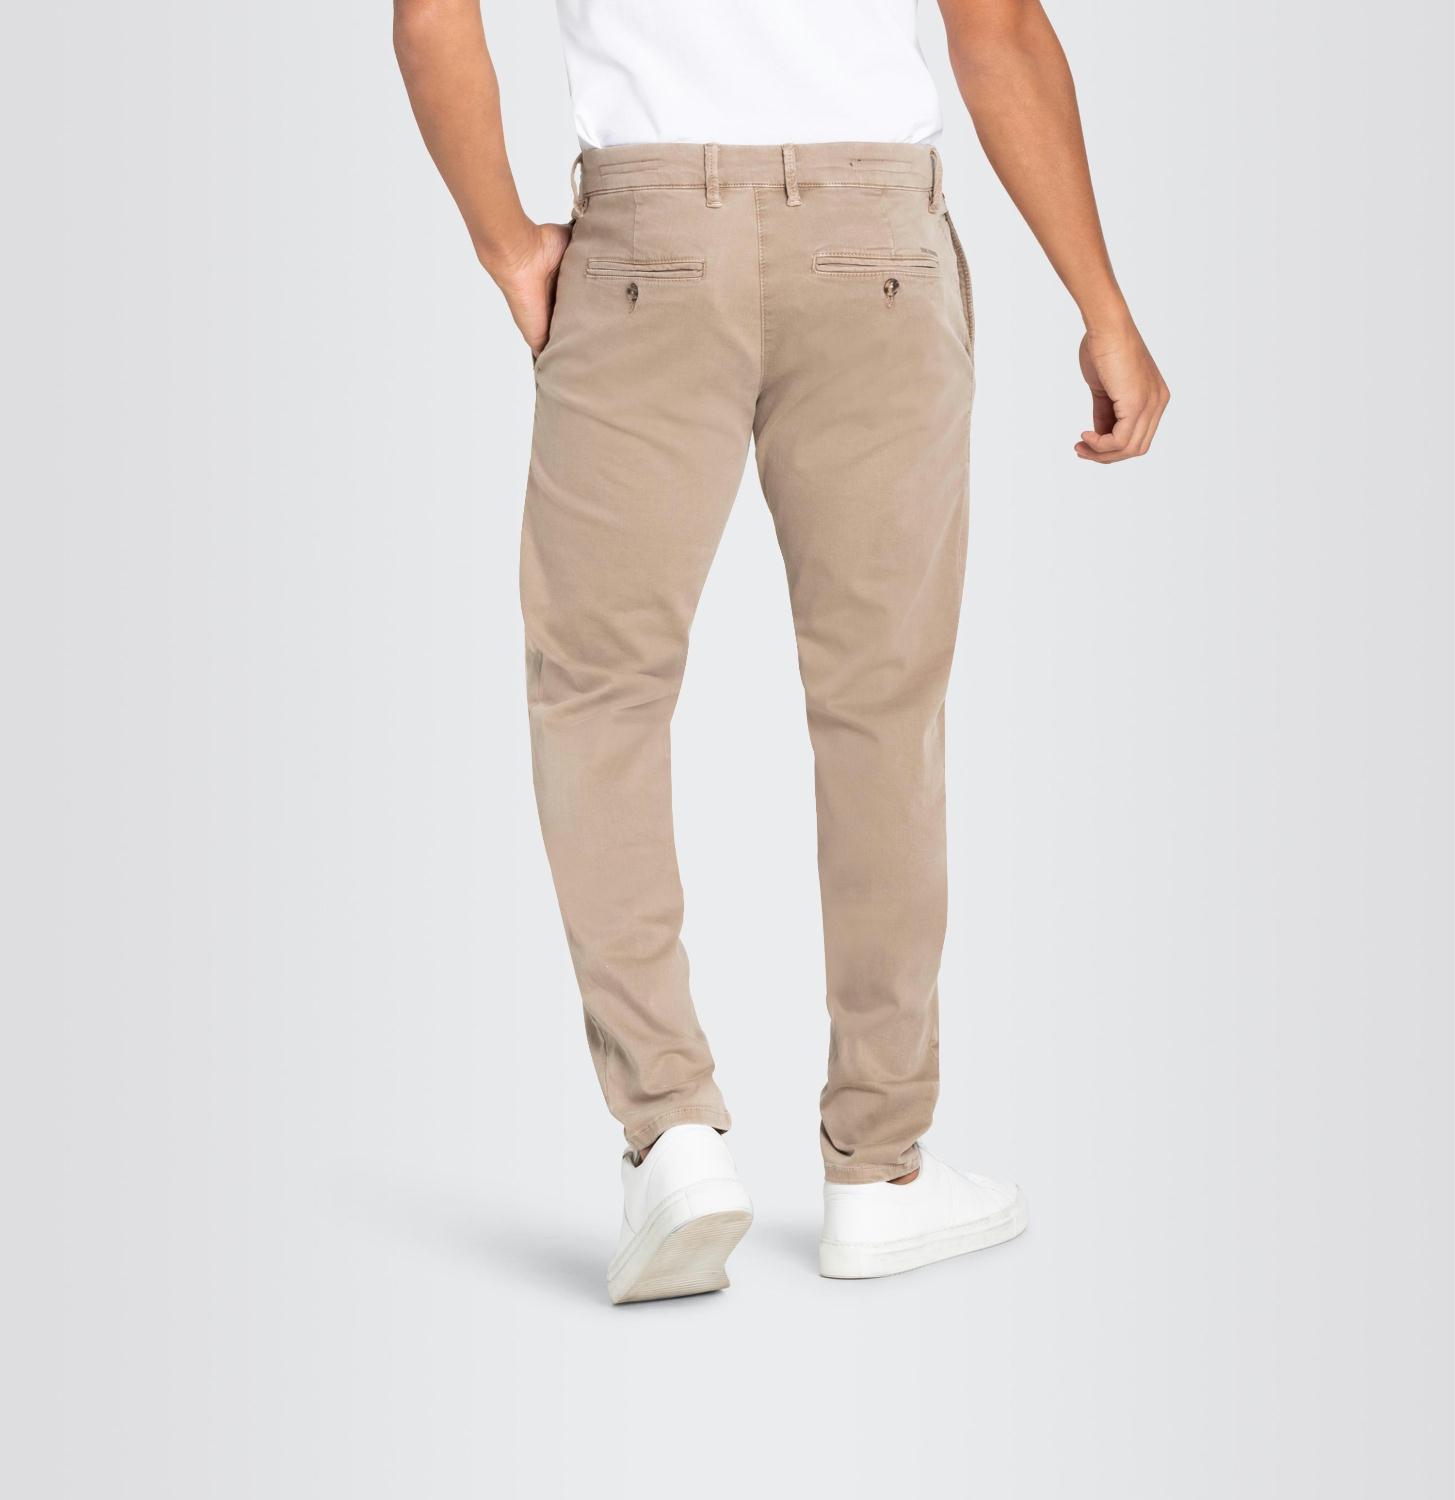 mac-jeans-driver-pants-bp_2w8h_8m8_rmw8be